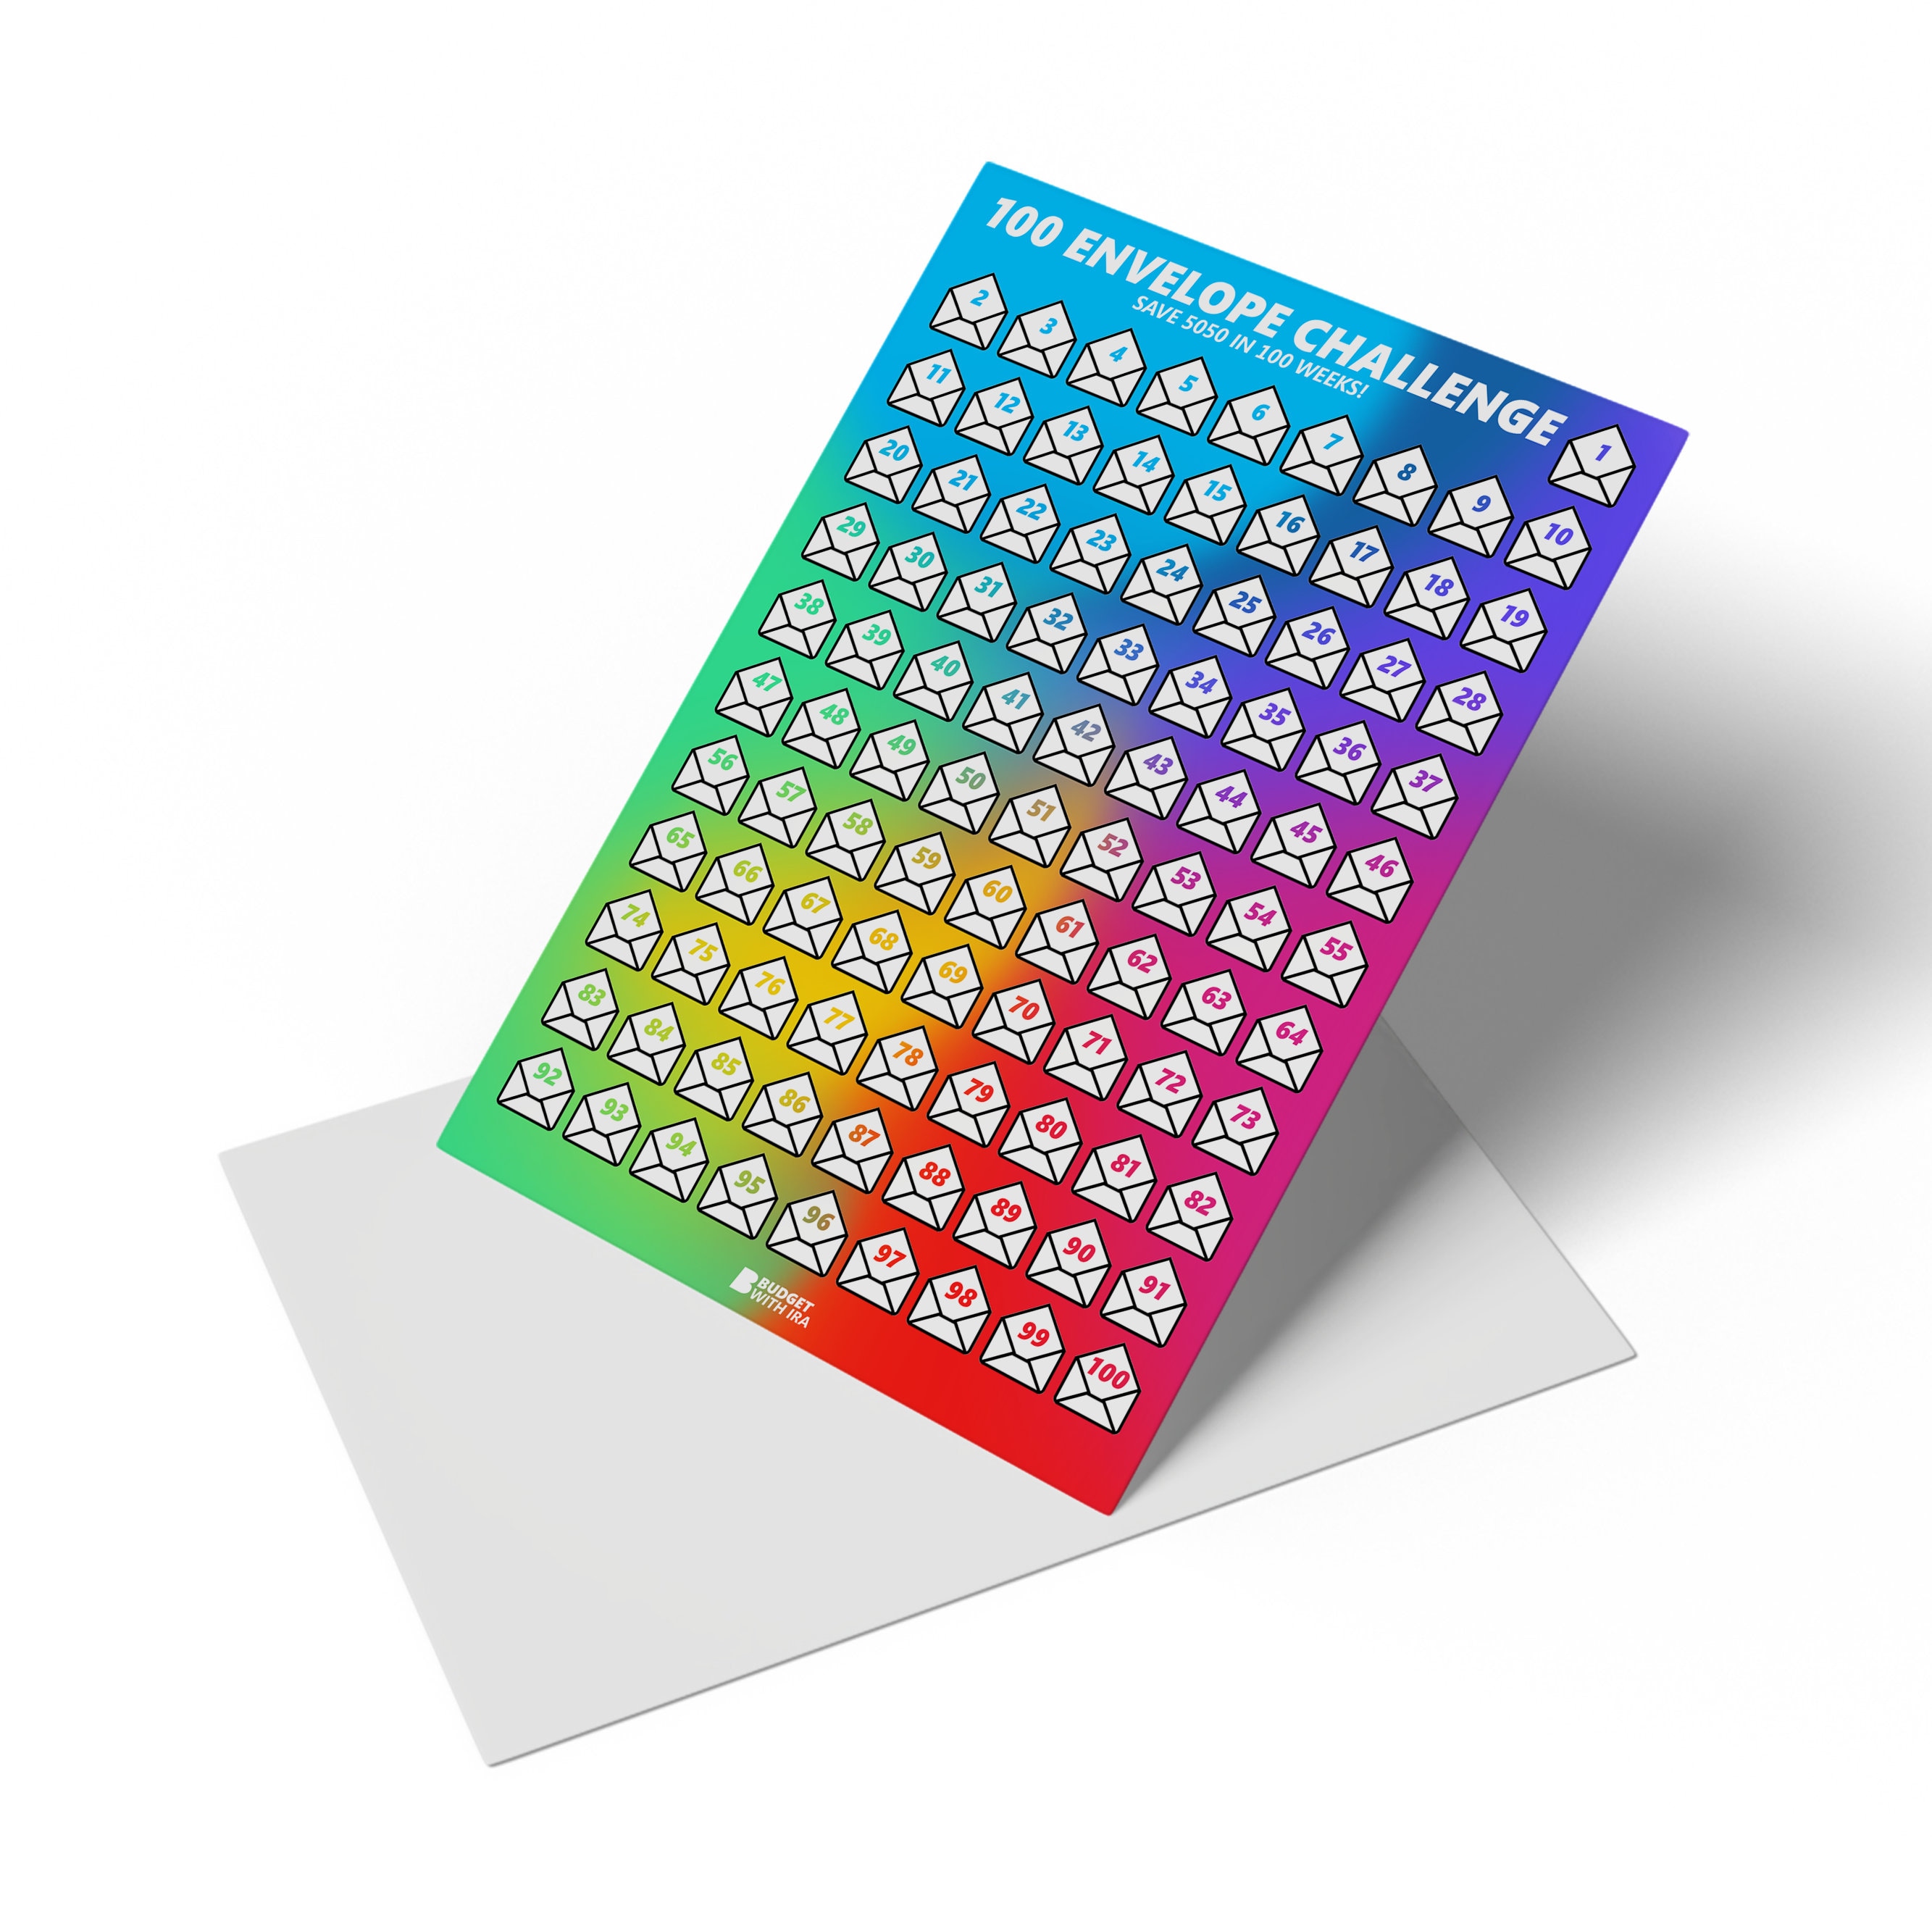 Enveloppes A5, pack de 6 - coloris assortis